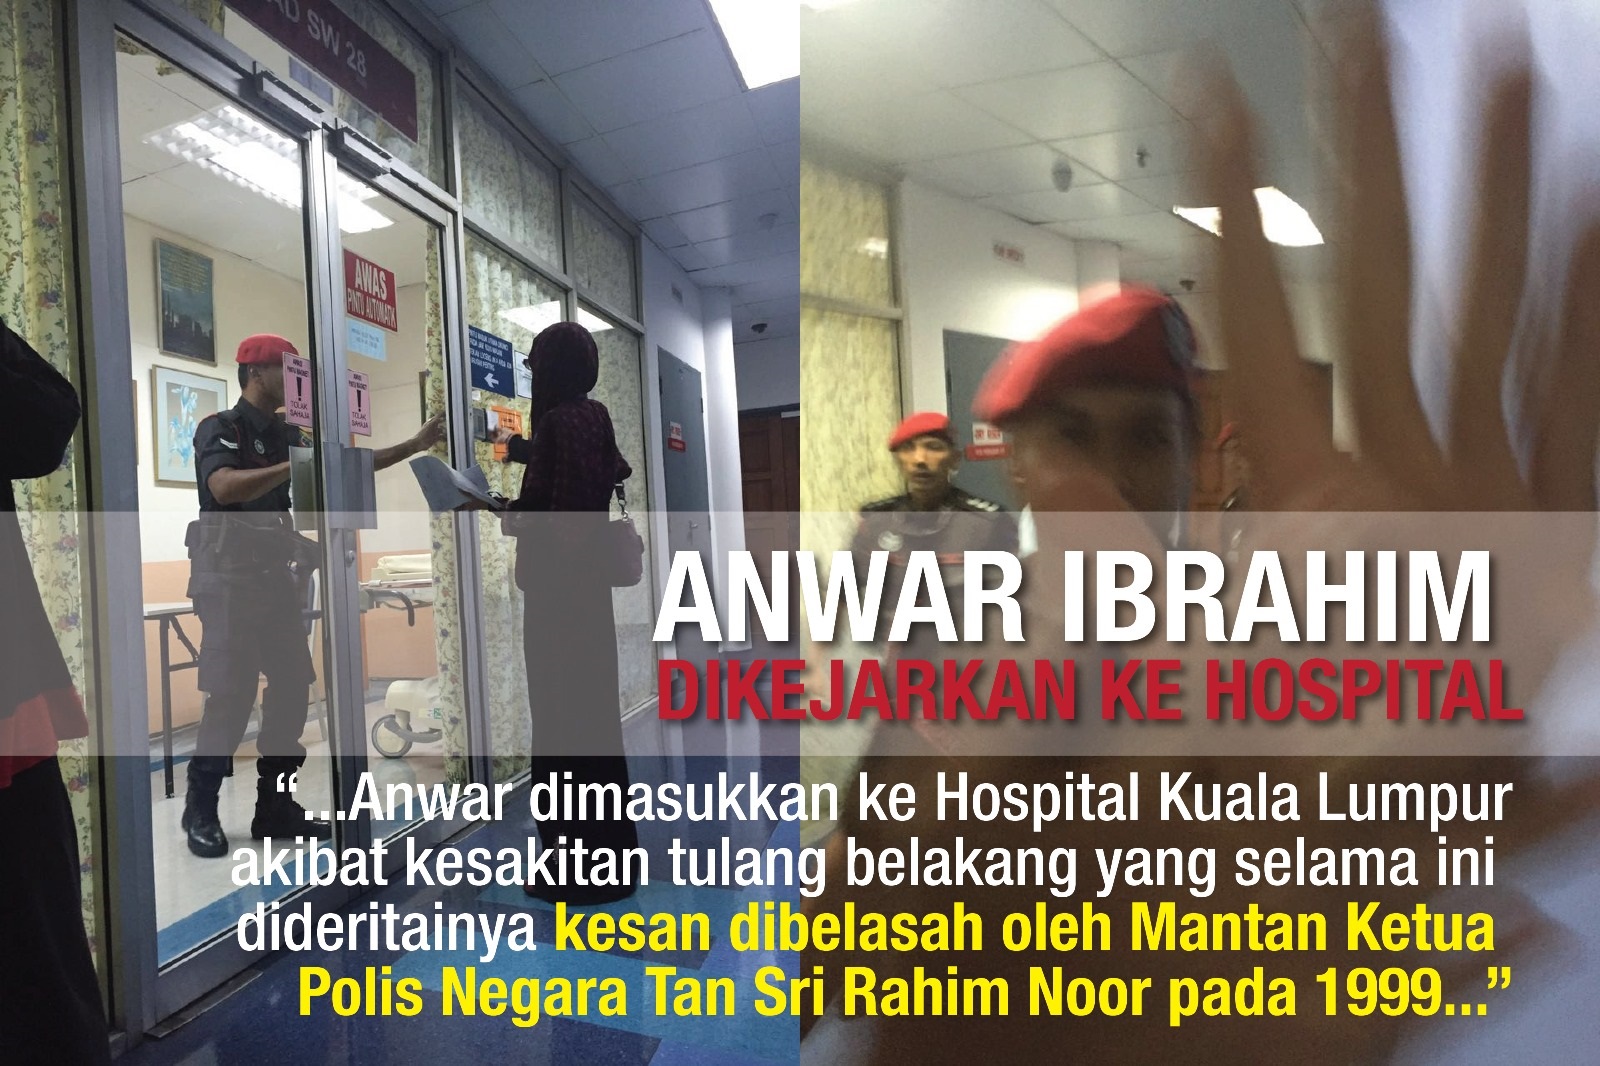 Datuk Seri Anwar Ibrahim Dikejarkan ke Hospital Akibat Kecederaan Tulang Belakang dan Masih Belum Menerima Rawatan Sepenuhnya-Di Manakah Janji Dato’ Seri Najib Razak?